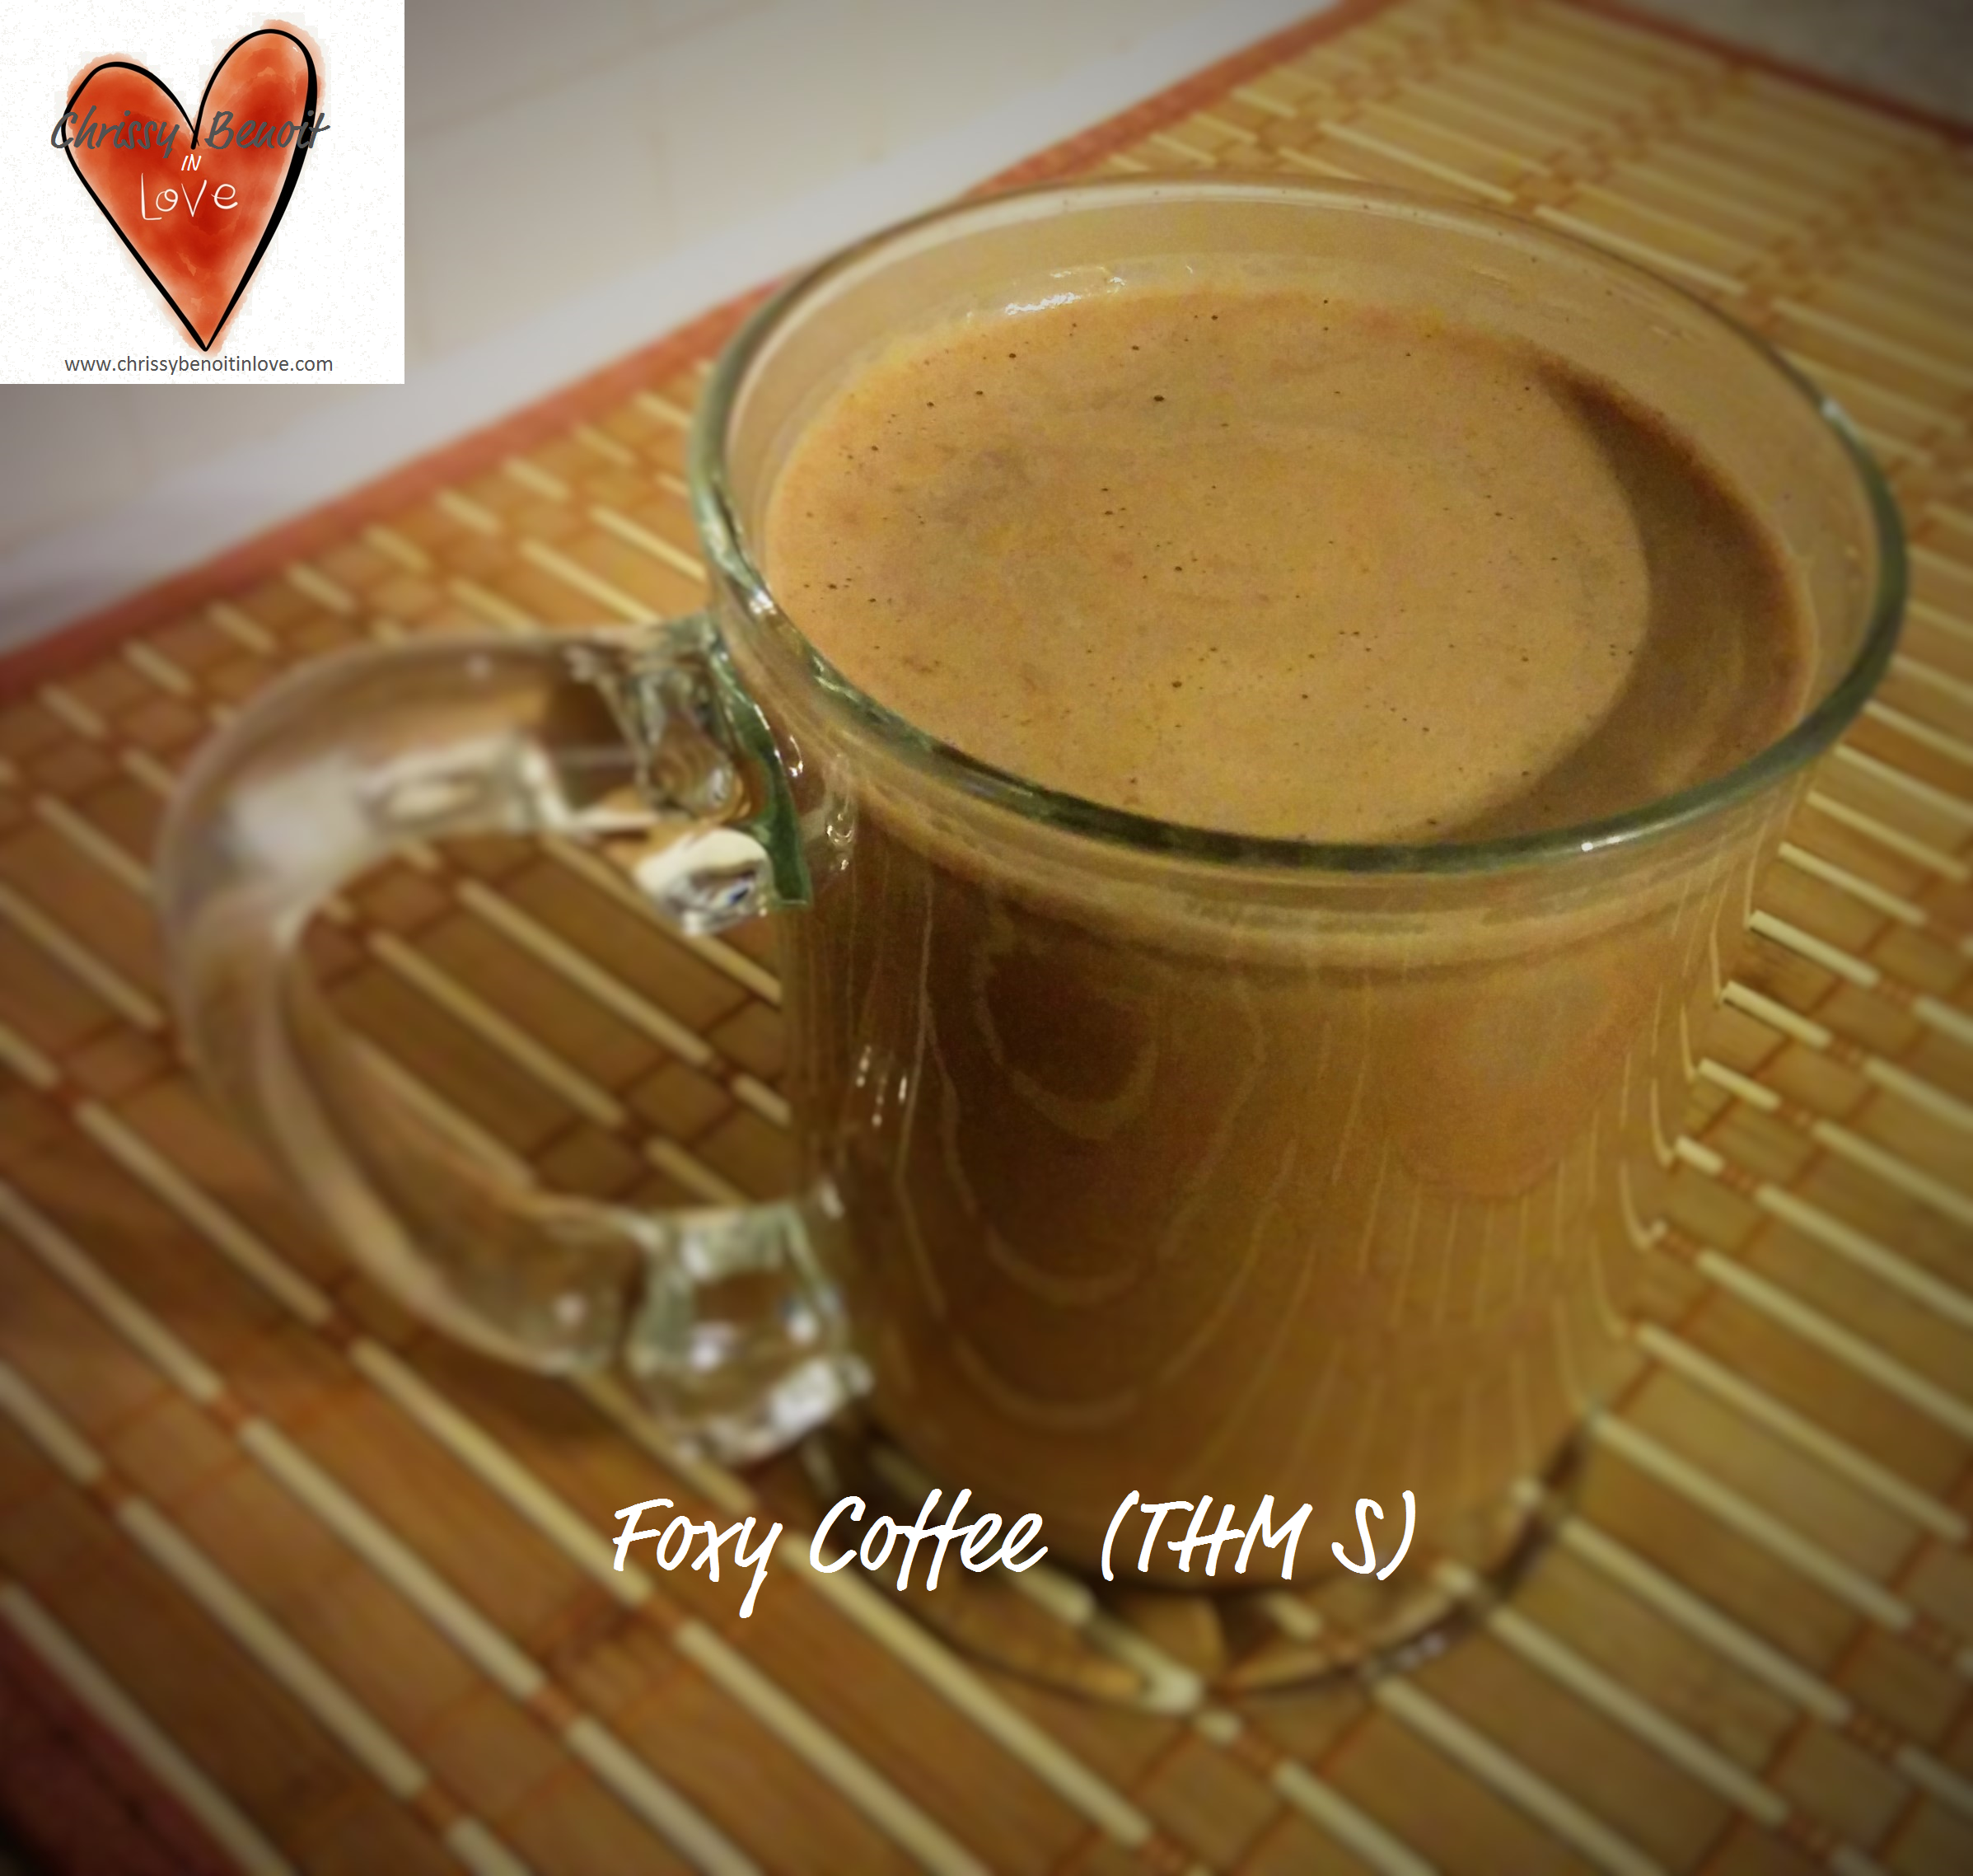 Foxy Coffee (THM S)